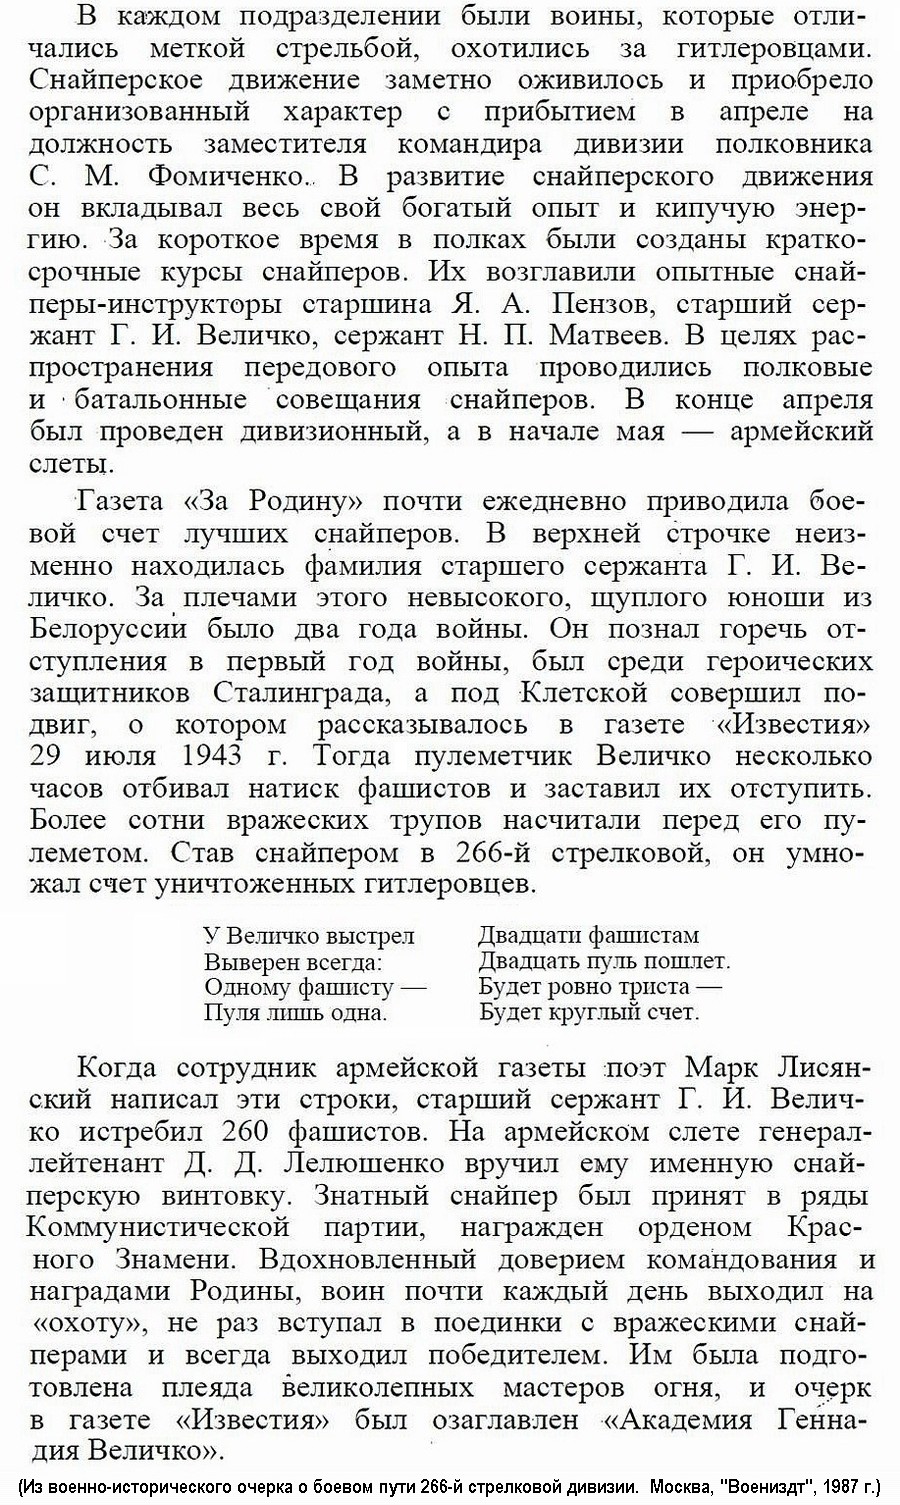 Из материалов прессы послевоенных лет о Г. И. Величко